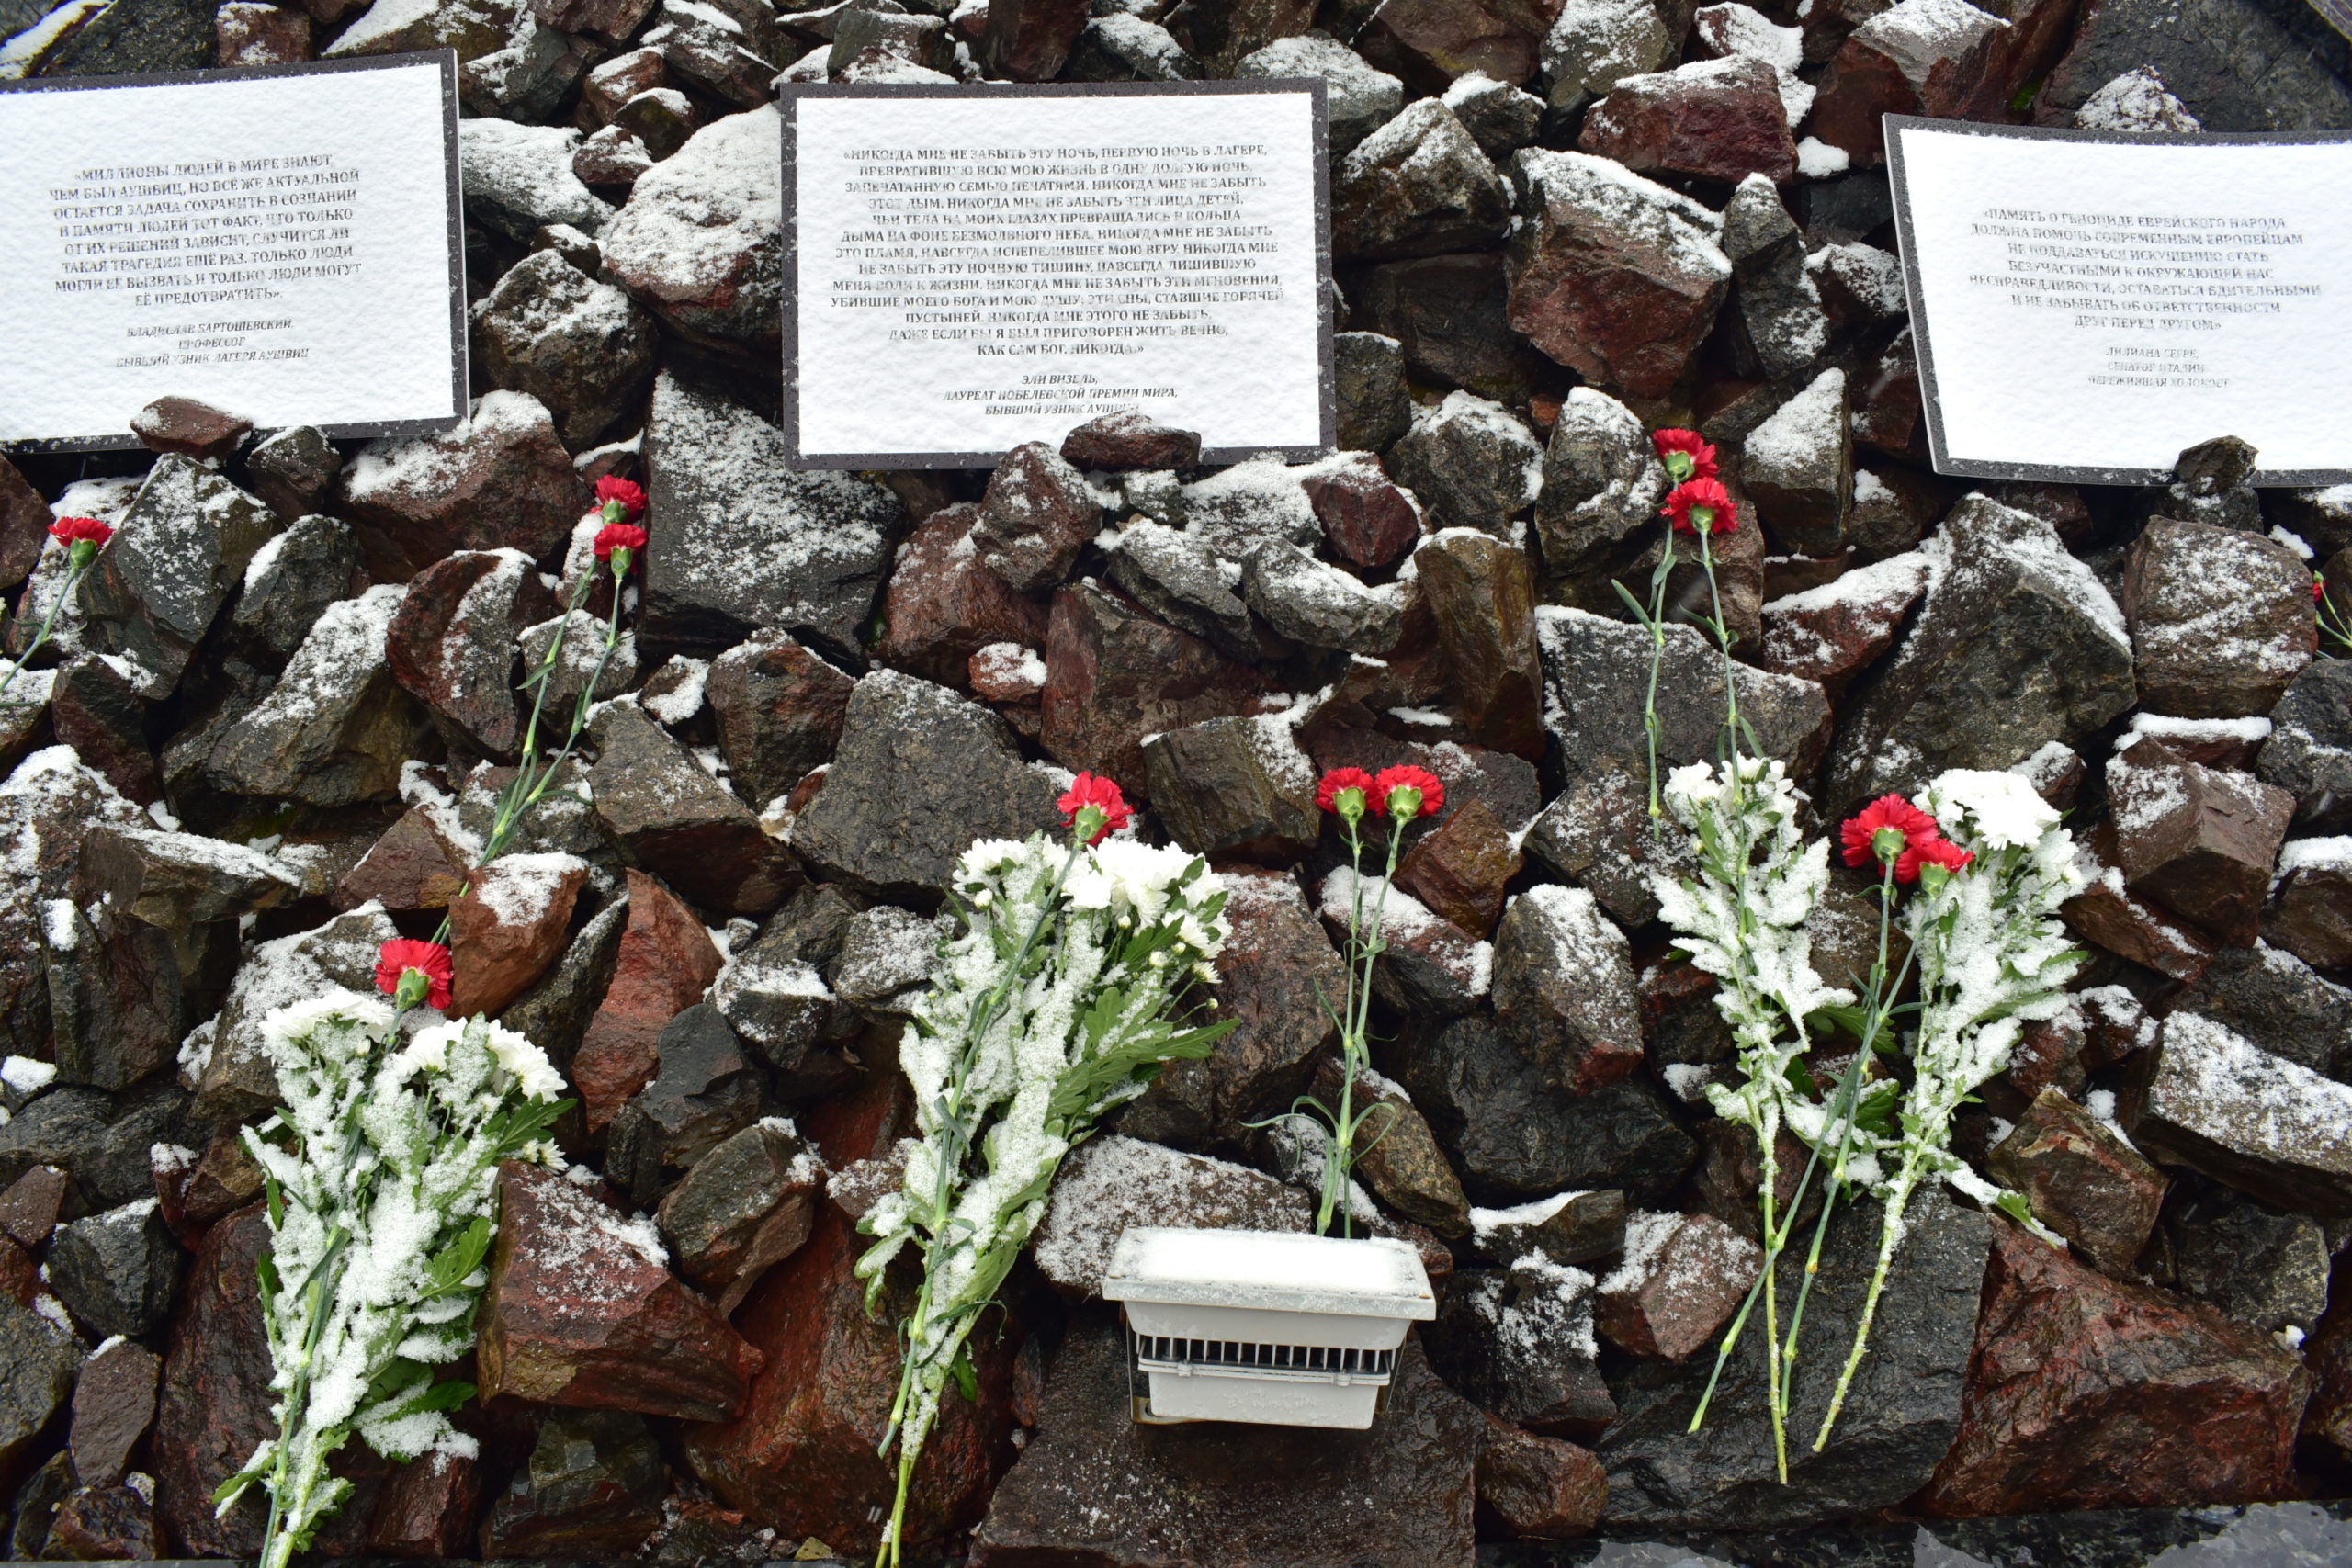 Как в Кишиневе прошел митинг-реквием в память о погибших во время Холокоста (ФОТО NM)